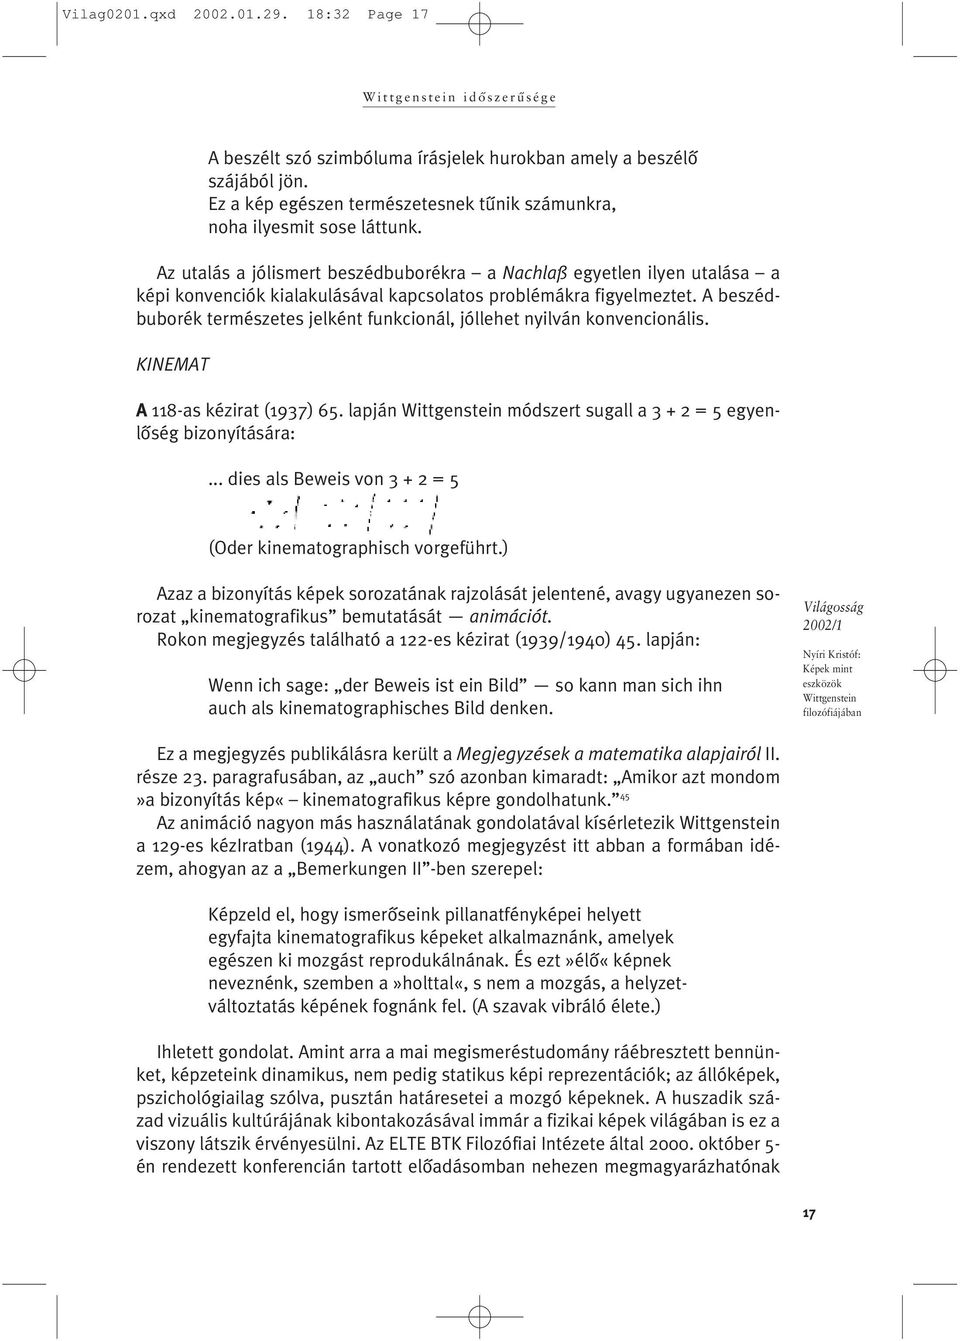 A beszédbuborék természetes jelként funkcionál, jóllehet nyilván konvencionális. KINEMAT A 118-as kézirat (1937) 65. lapján módszert sugall a 3 + 2 = 5 egyenlõség bizonyítására:.